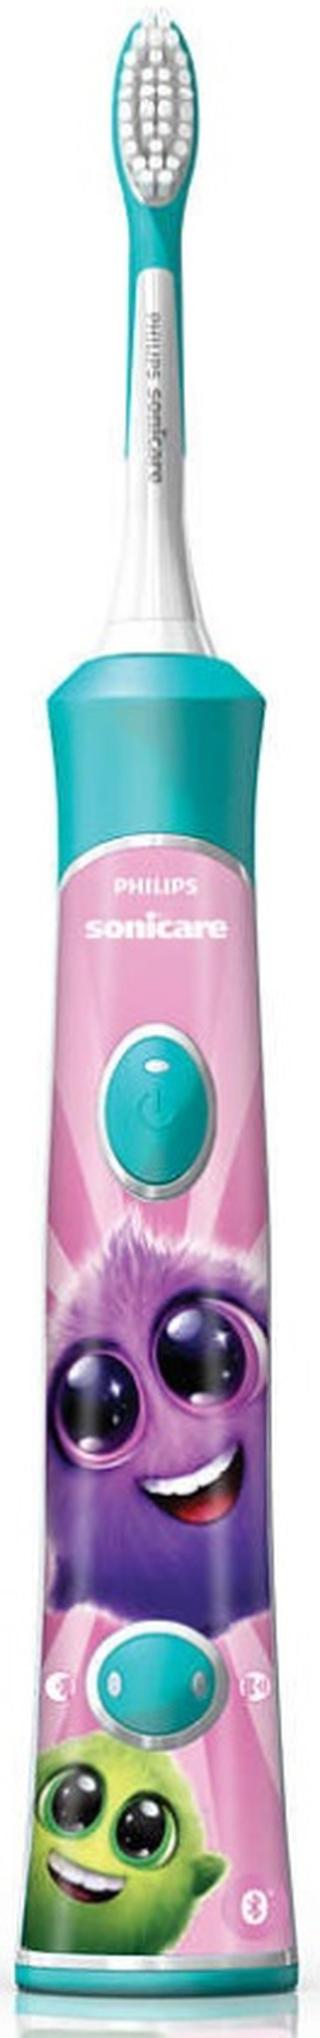 Philips elektrický zubní kartáček Sonicare for Kids Hx6322/04 s Bluetooth